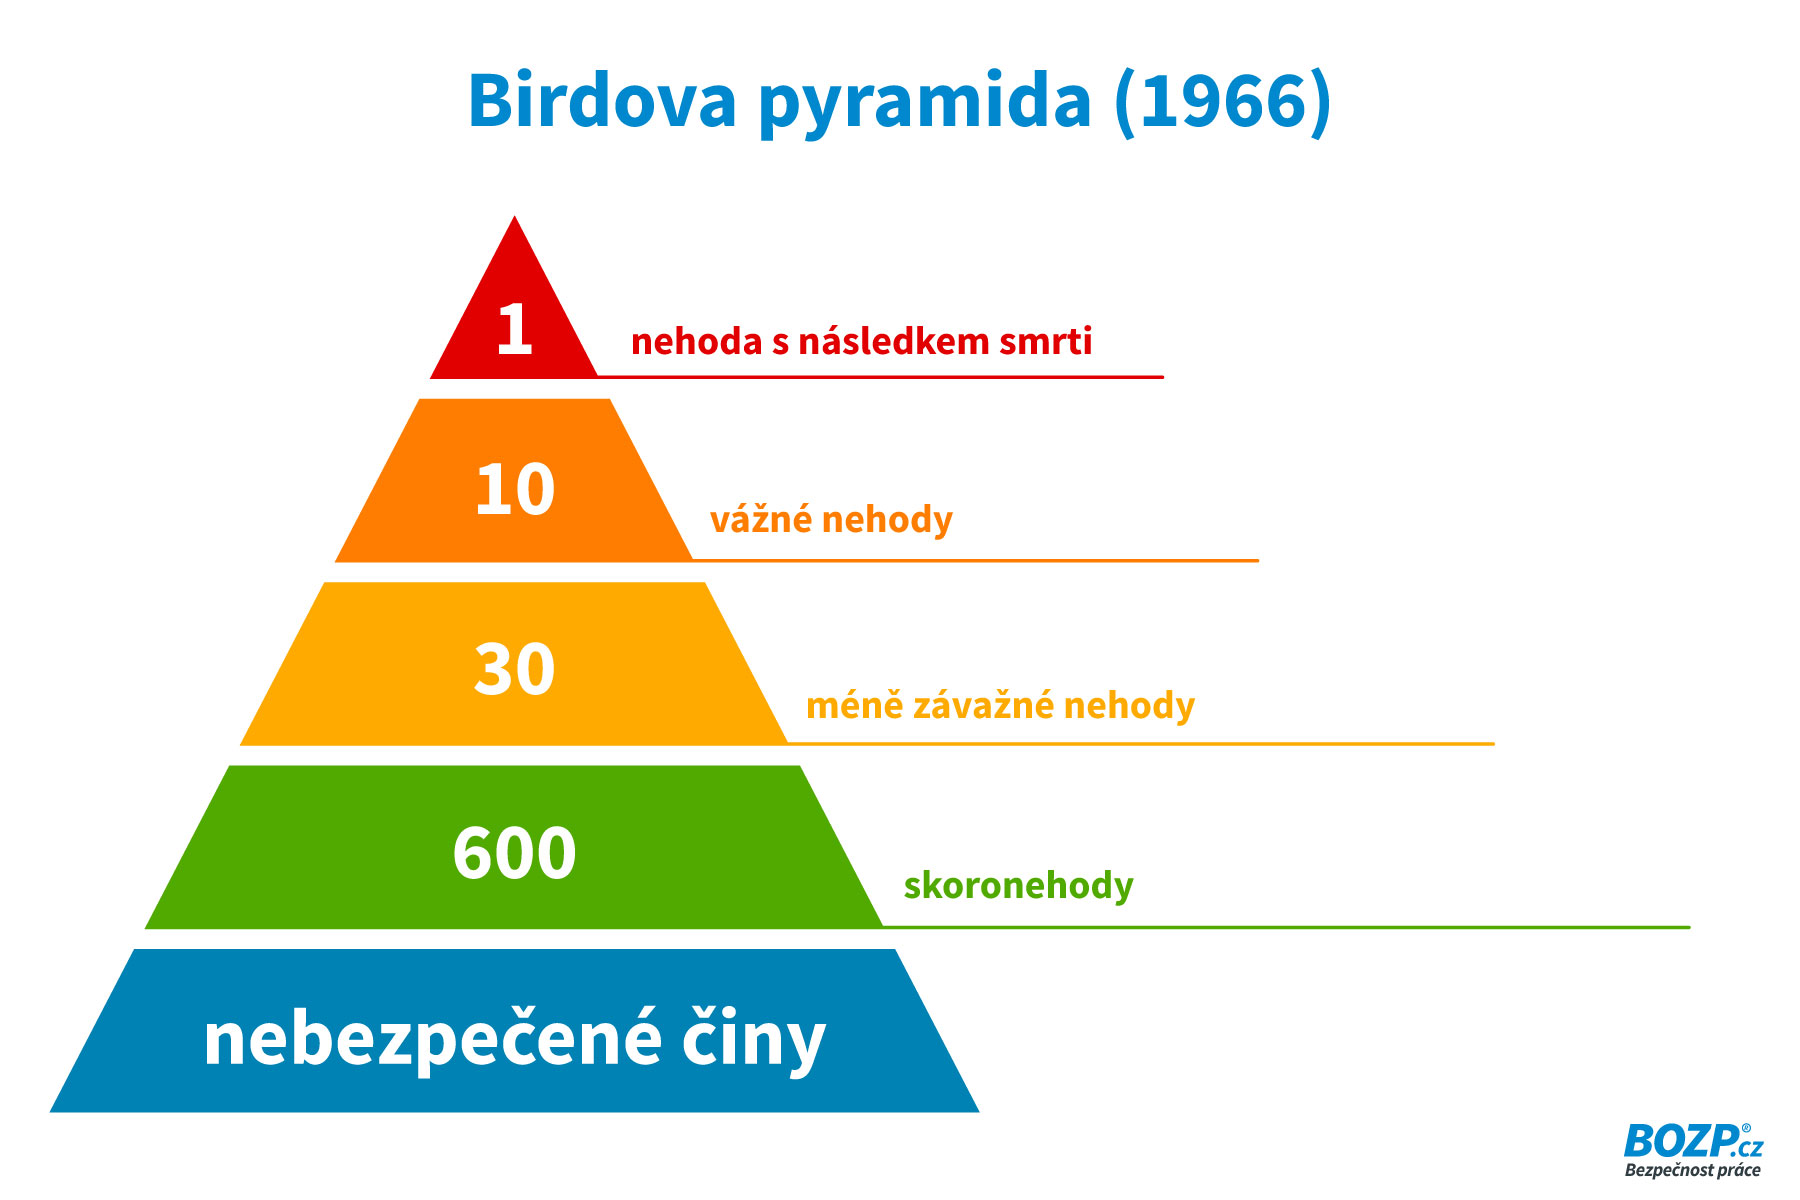 Birdova pyramida